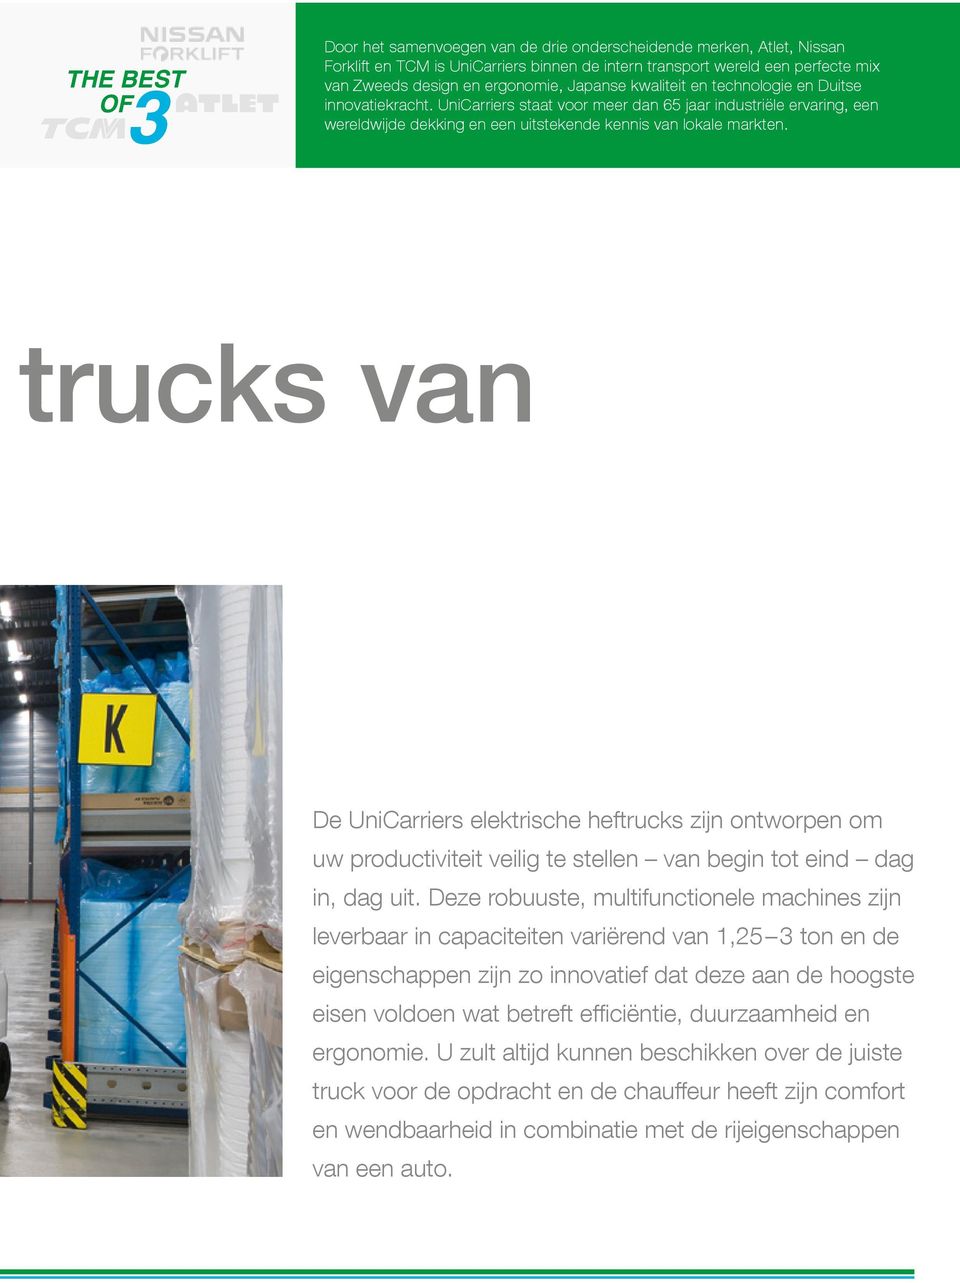 trucks van De UniCarriers elektrische heftrucks zijn ontworpen om uw productiviteit veilig te stellen van begin tot eind dag in, dag uit.